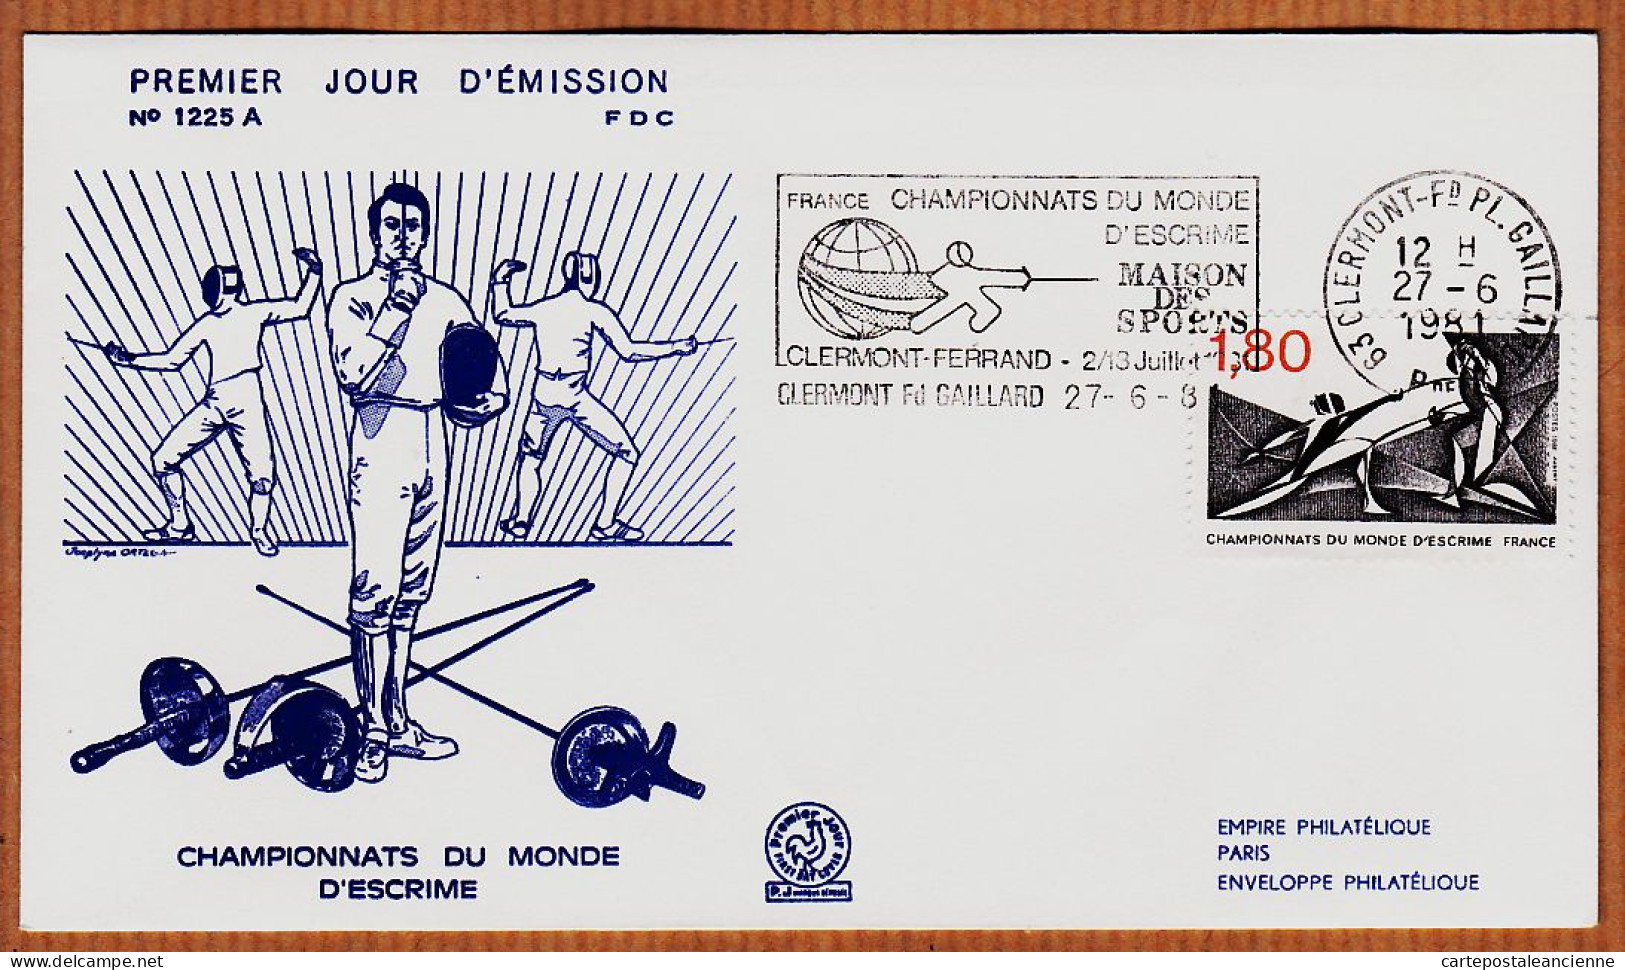 04765 / FDC CHAMPIONNATS Du MONDE D' ESCRIME 27 Juin 1981 Flamme CLERMONT-FERRAND Premier Jour Emission 1225 A - Fechten